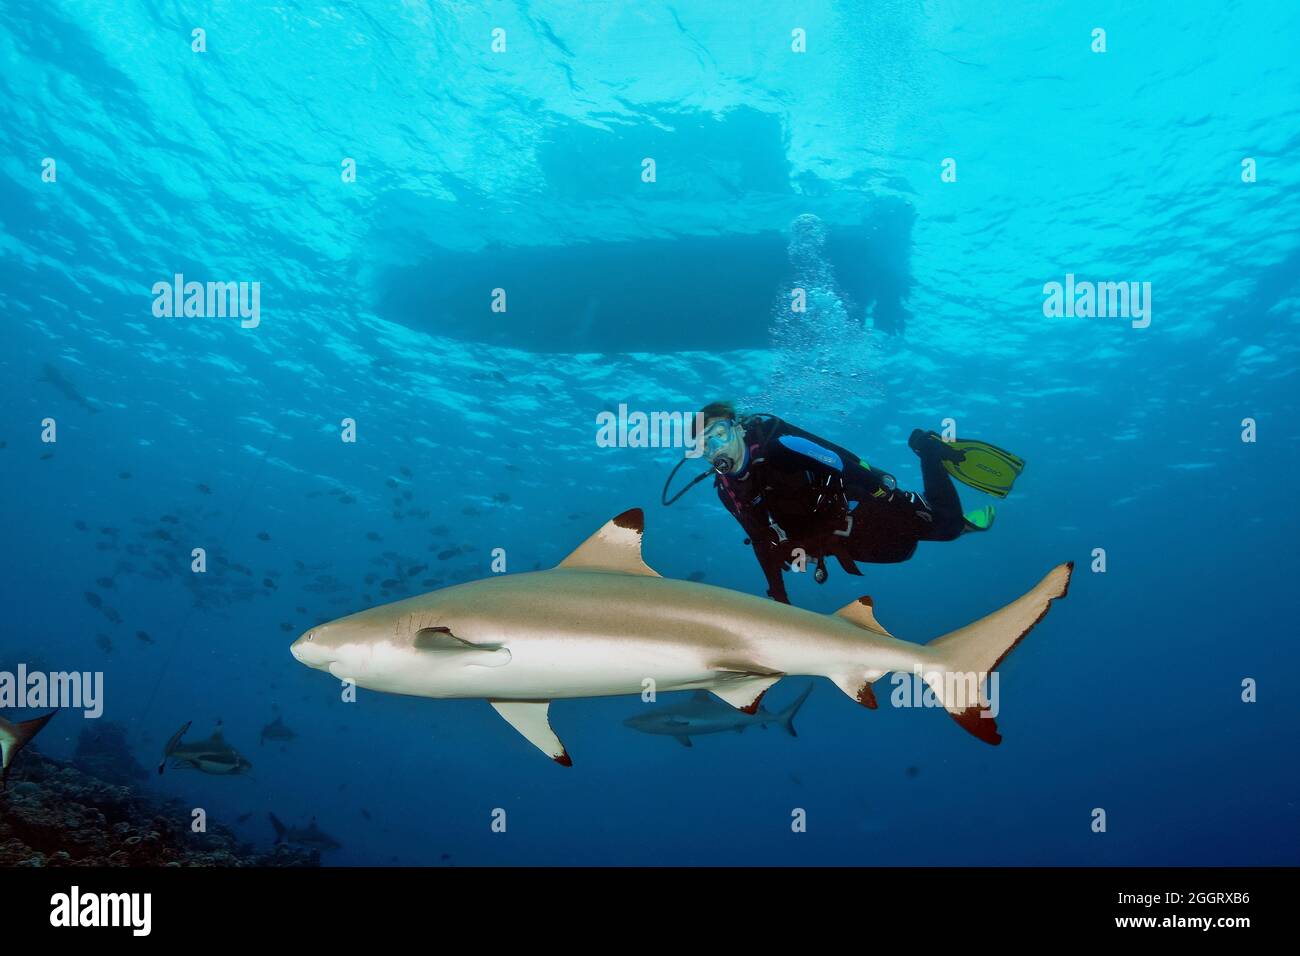 Taucherin betrachtet Schwarzspitzenriffhai (Carcharhinus melanopterus), darüber an der Wasseroberfläche Tauchboot, Indischer Ozean, Pazifik, Yap, FSM Foto Stock